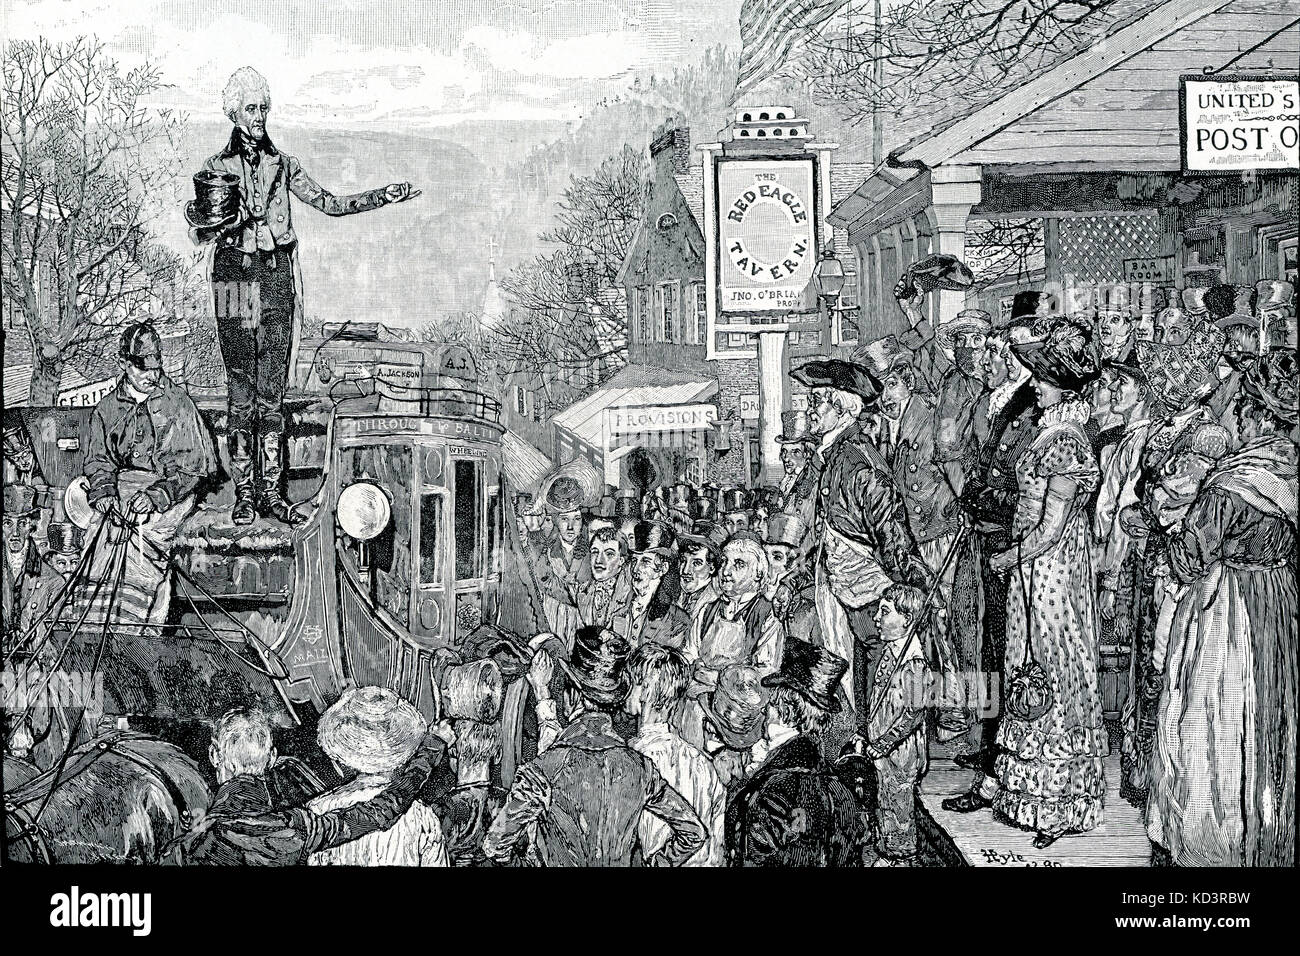 Andrew Jackson como Presidente electo en su camino a Washington, 1829. Séptimo Presidente de los Estados Unidos. Ilustración de Howard Pyle, 1911 Foto de stock